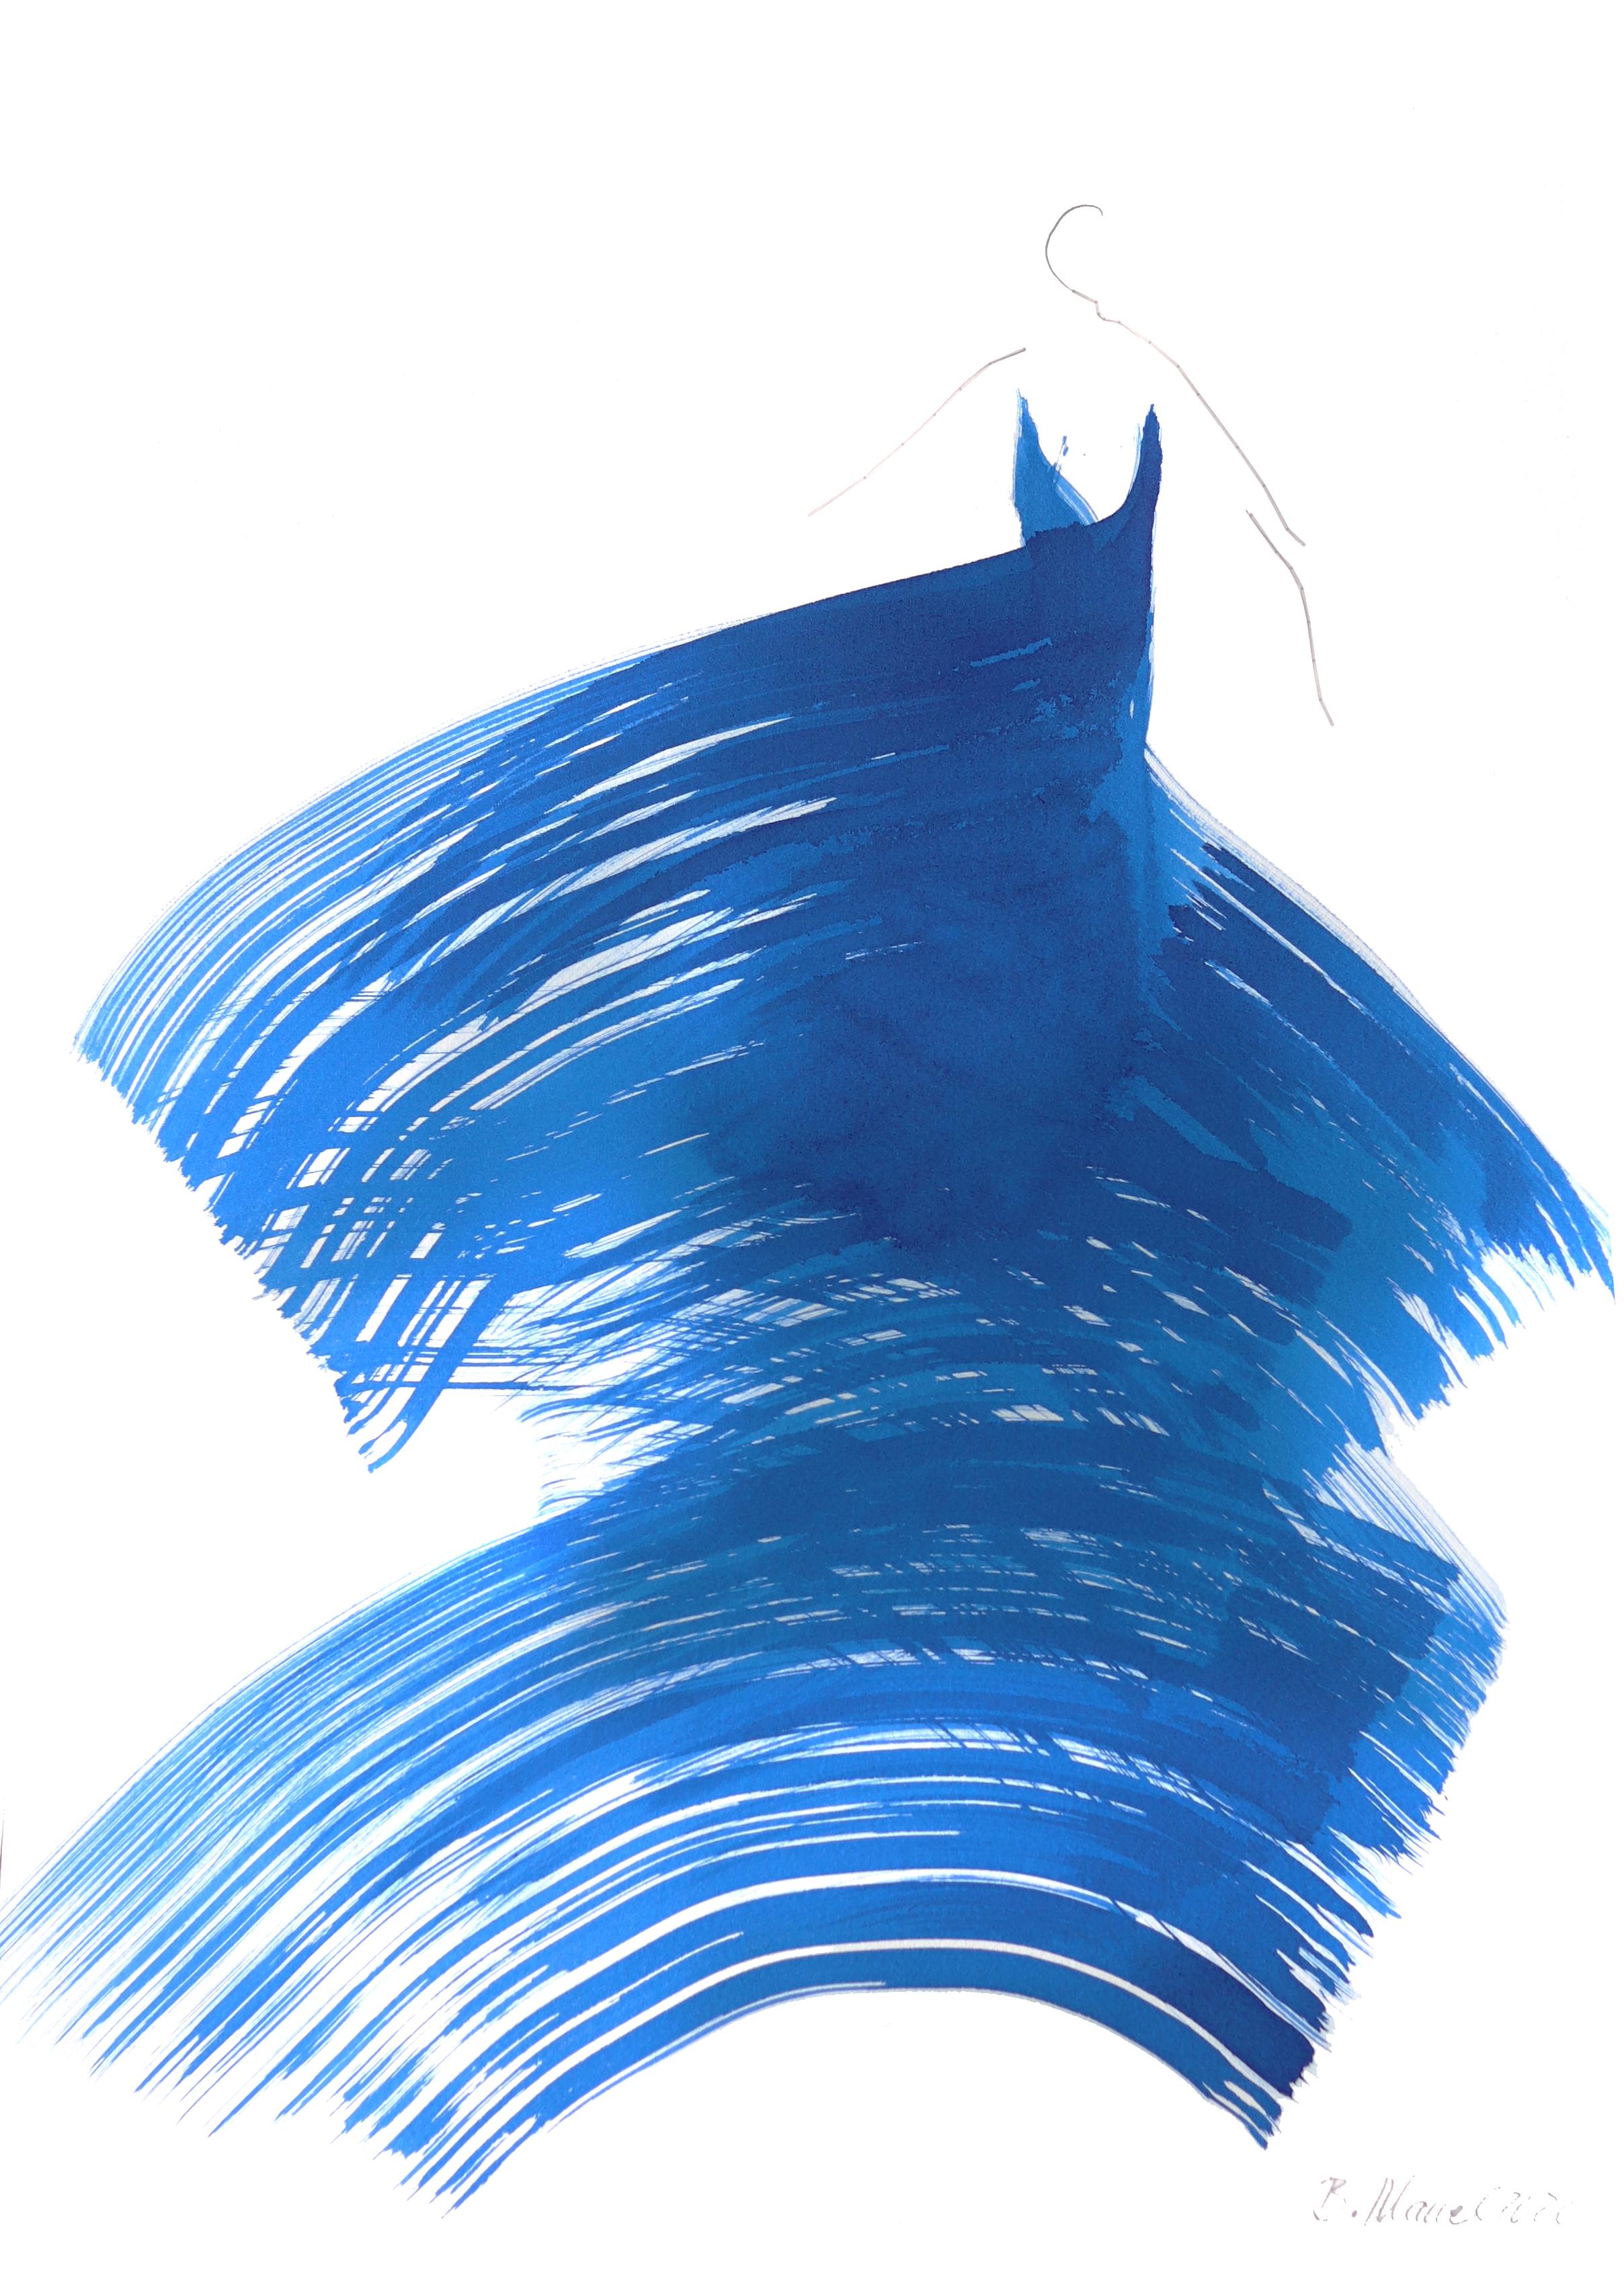 The Blue Dress 5 - Mixed Media Art by Bettina Mauel